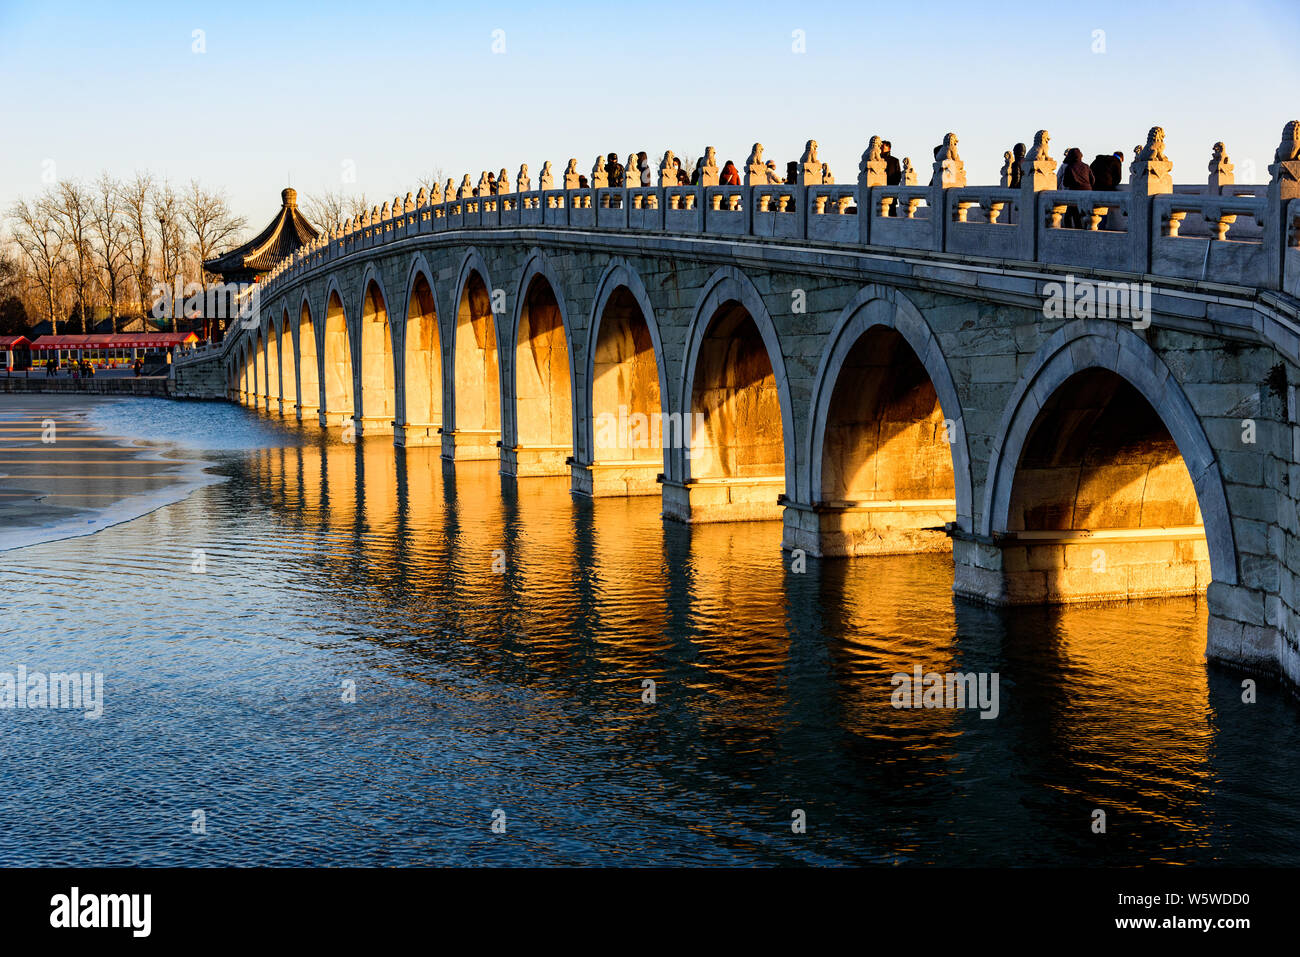 Il crepuscolo dorato penetra attraverso l'apertura del famoso Ponte Seventeen-Arch sotto il tramonto presso il Palazzo estivo a Pechino in Cina, 28 Decem Foto Stock